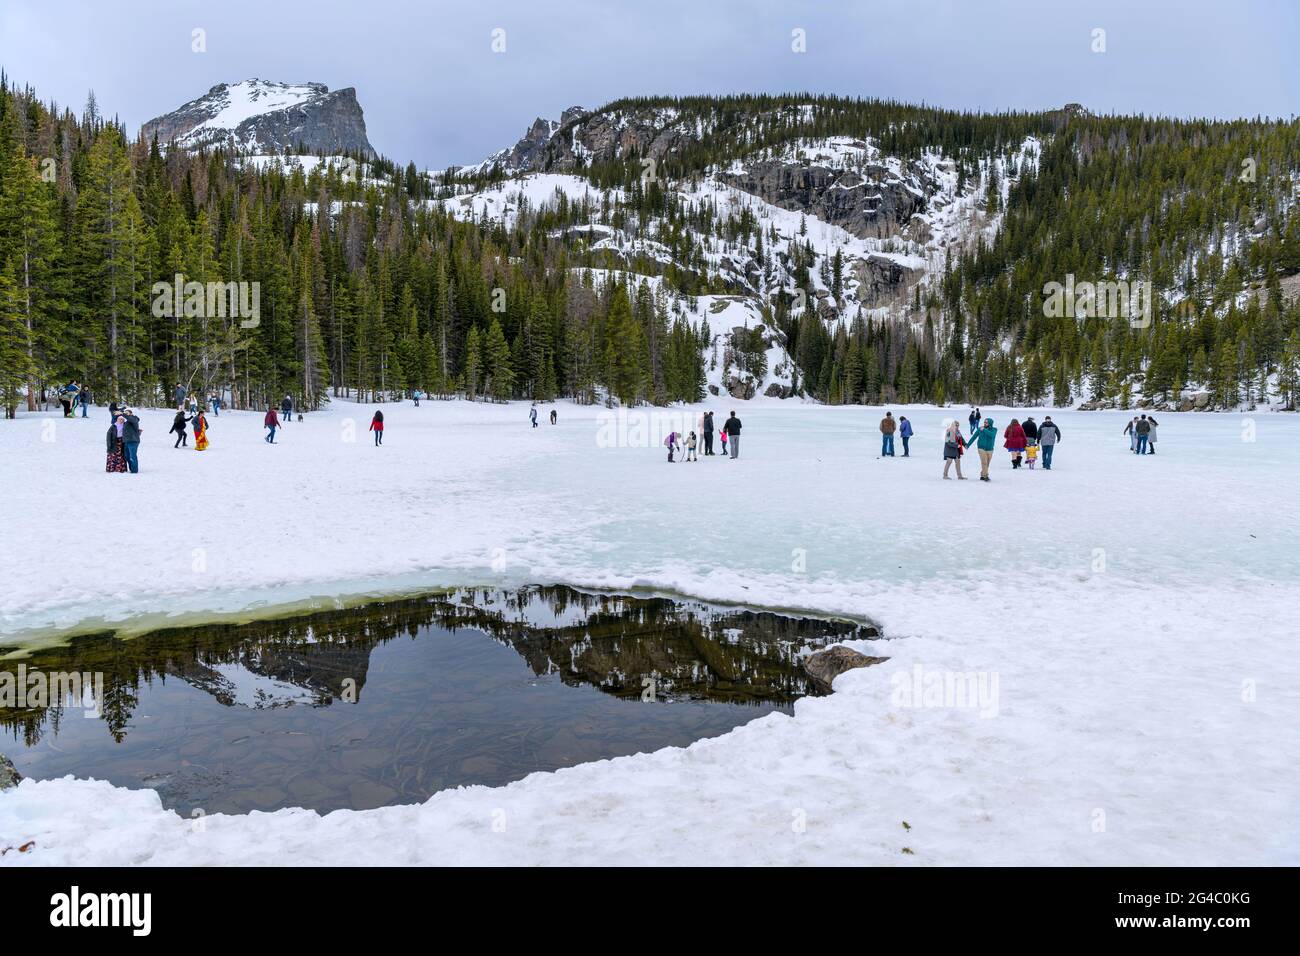 Frühling am Bear Lake - Es ist Frühling; Touristen genießen es auf dem noch gefrorenen und schneebedeckten Bear Lake im Rocky Mountain National Park, CO, USA. Stockfoto